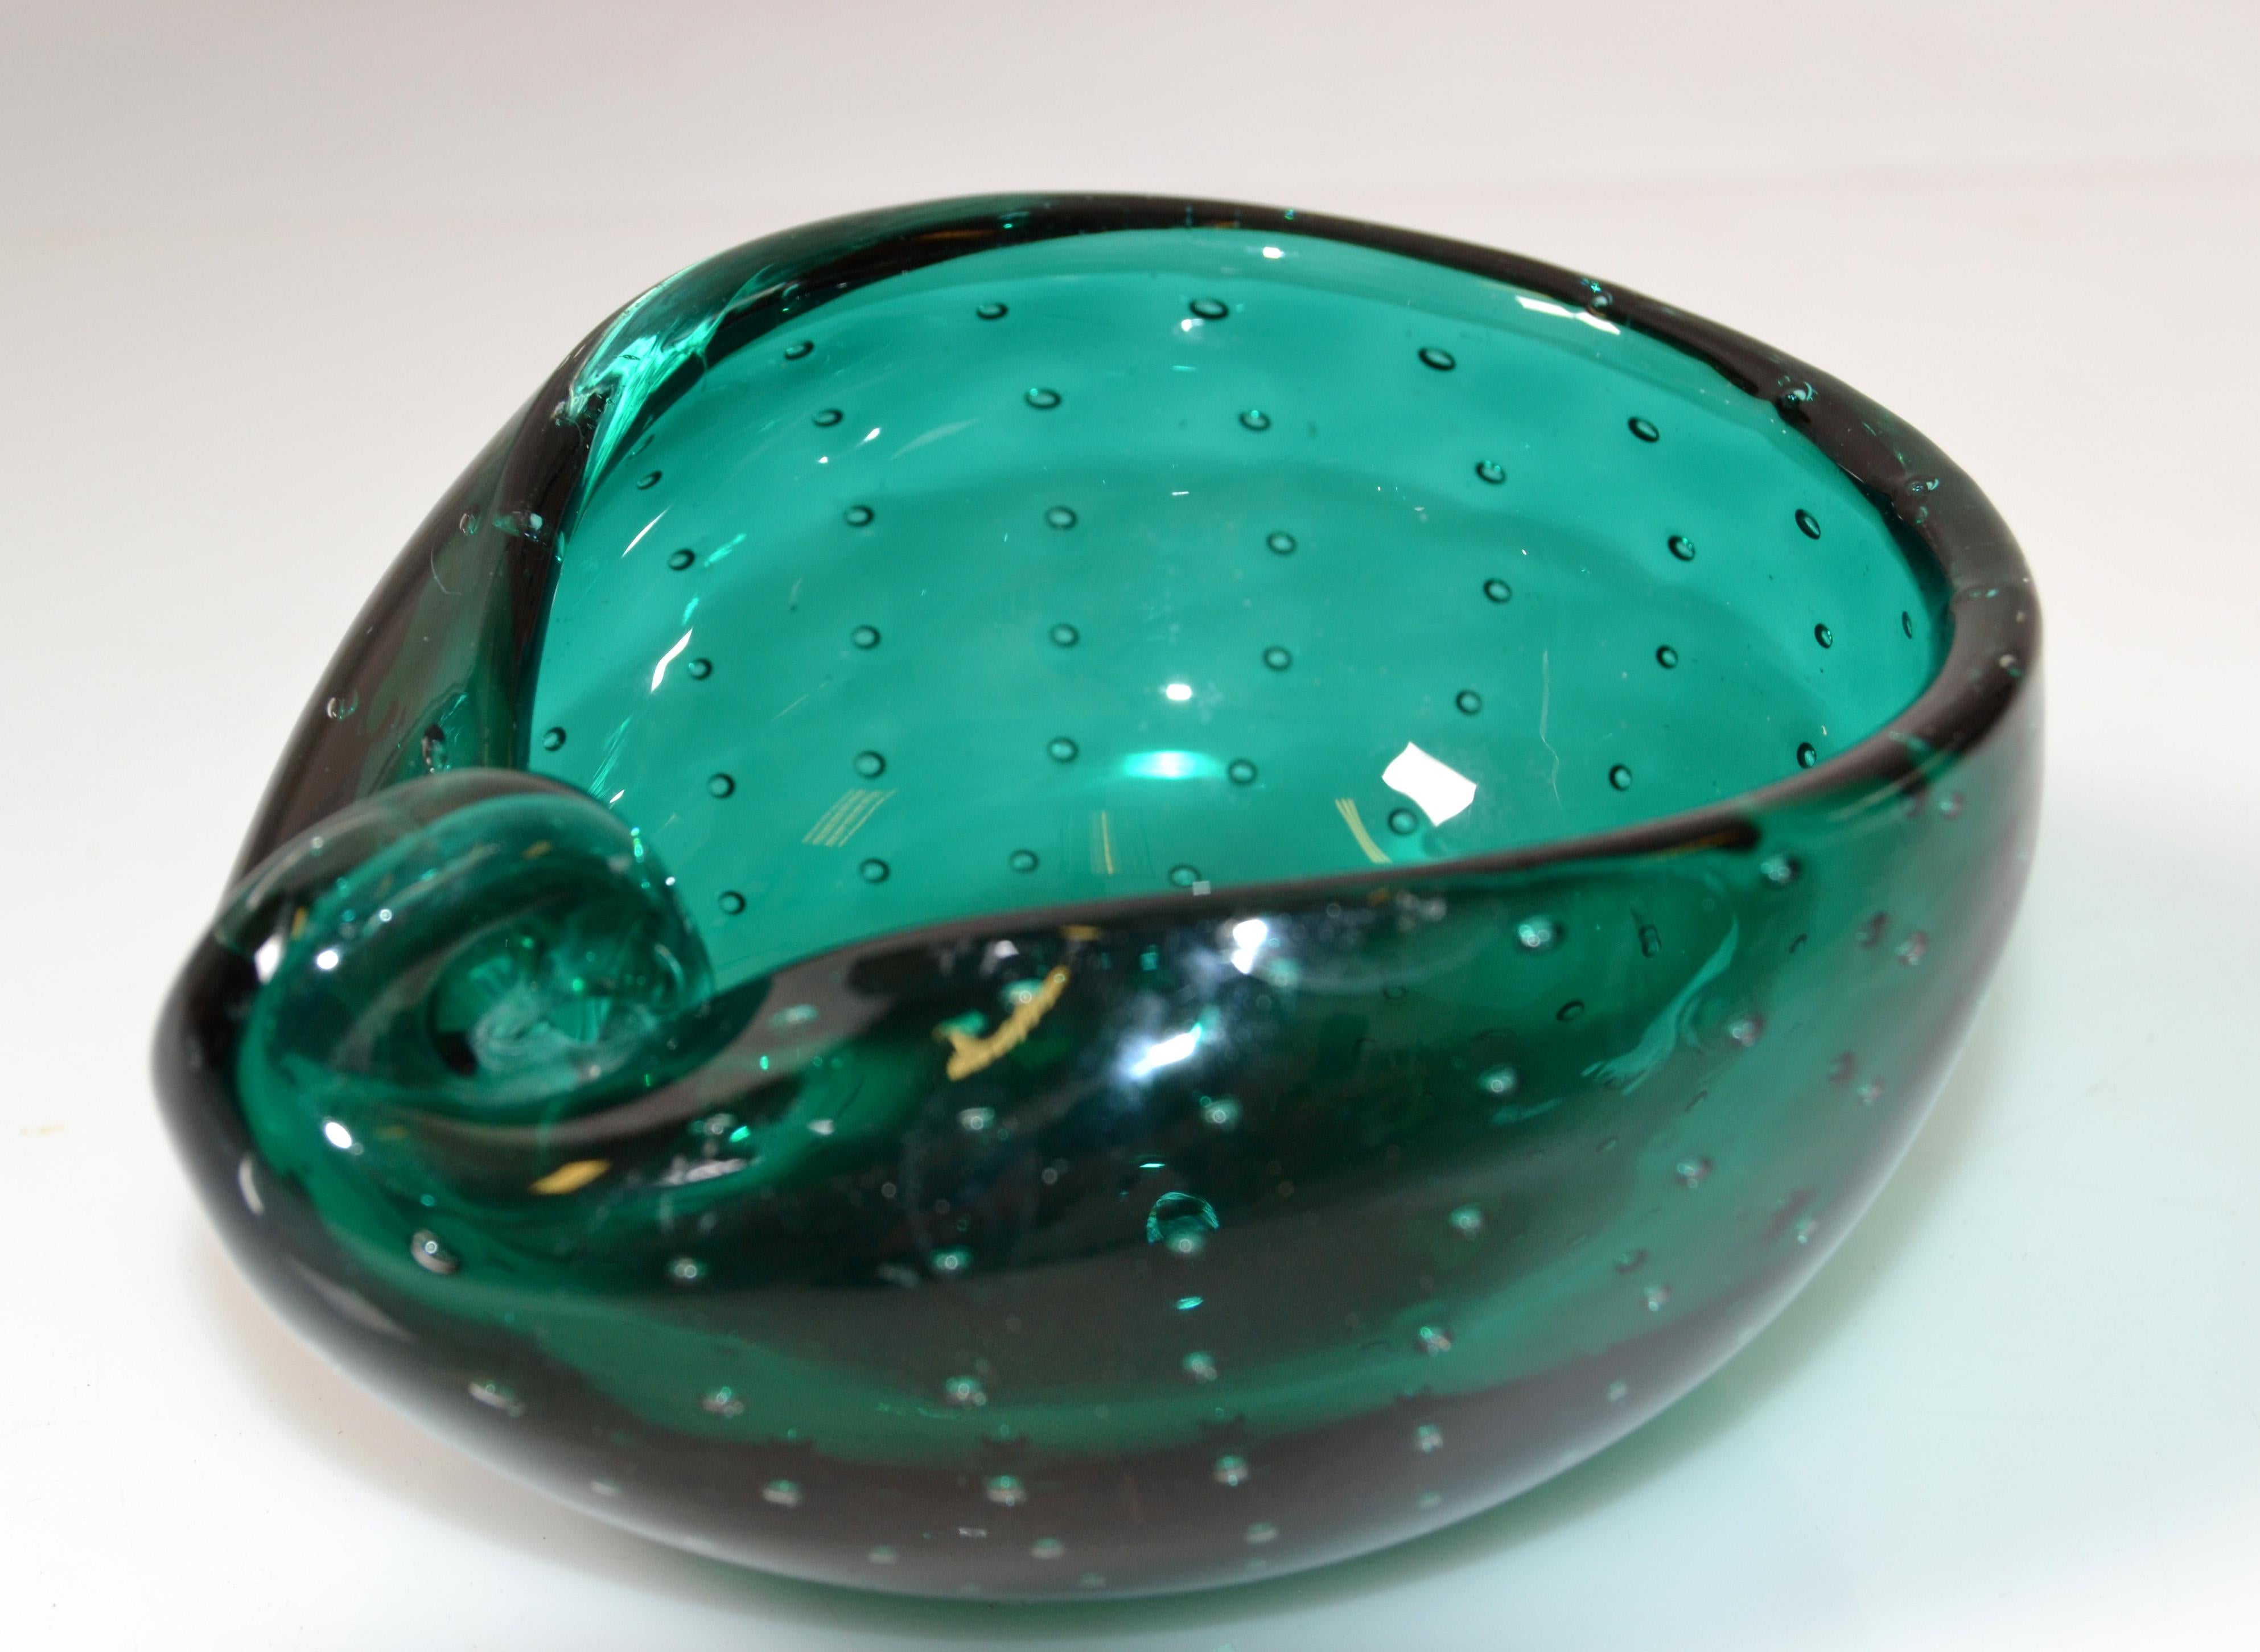 Italienische Mid-Century Modern grüne Blase Glasschale, Catchall oder Aschenbecher, die in ovaler Form ist.
Hergestellt im späten 20. Jahrhundert.
Einfach schön.